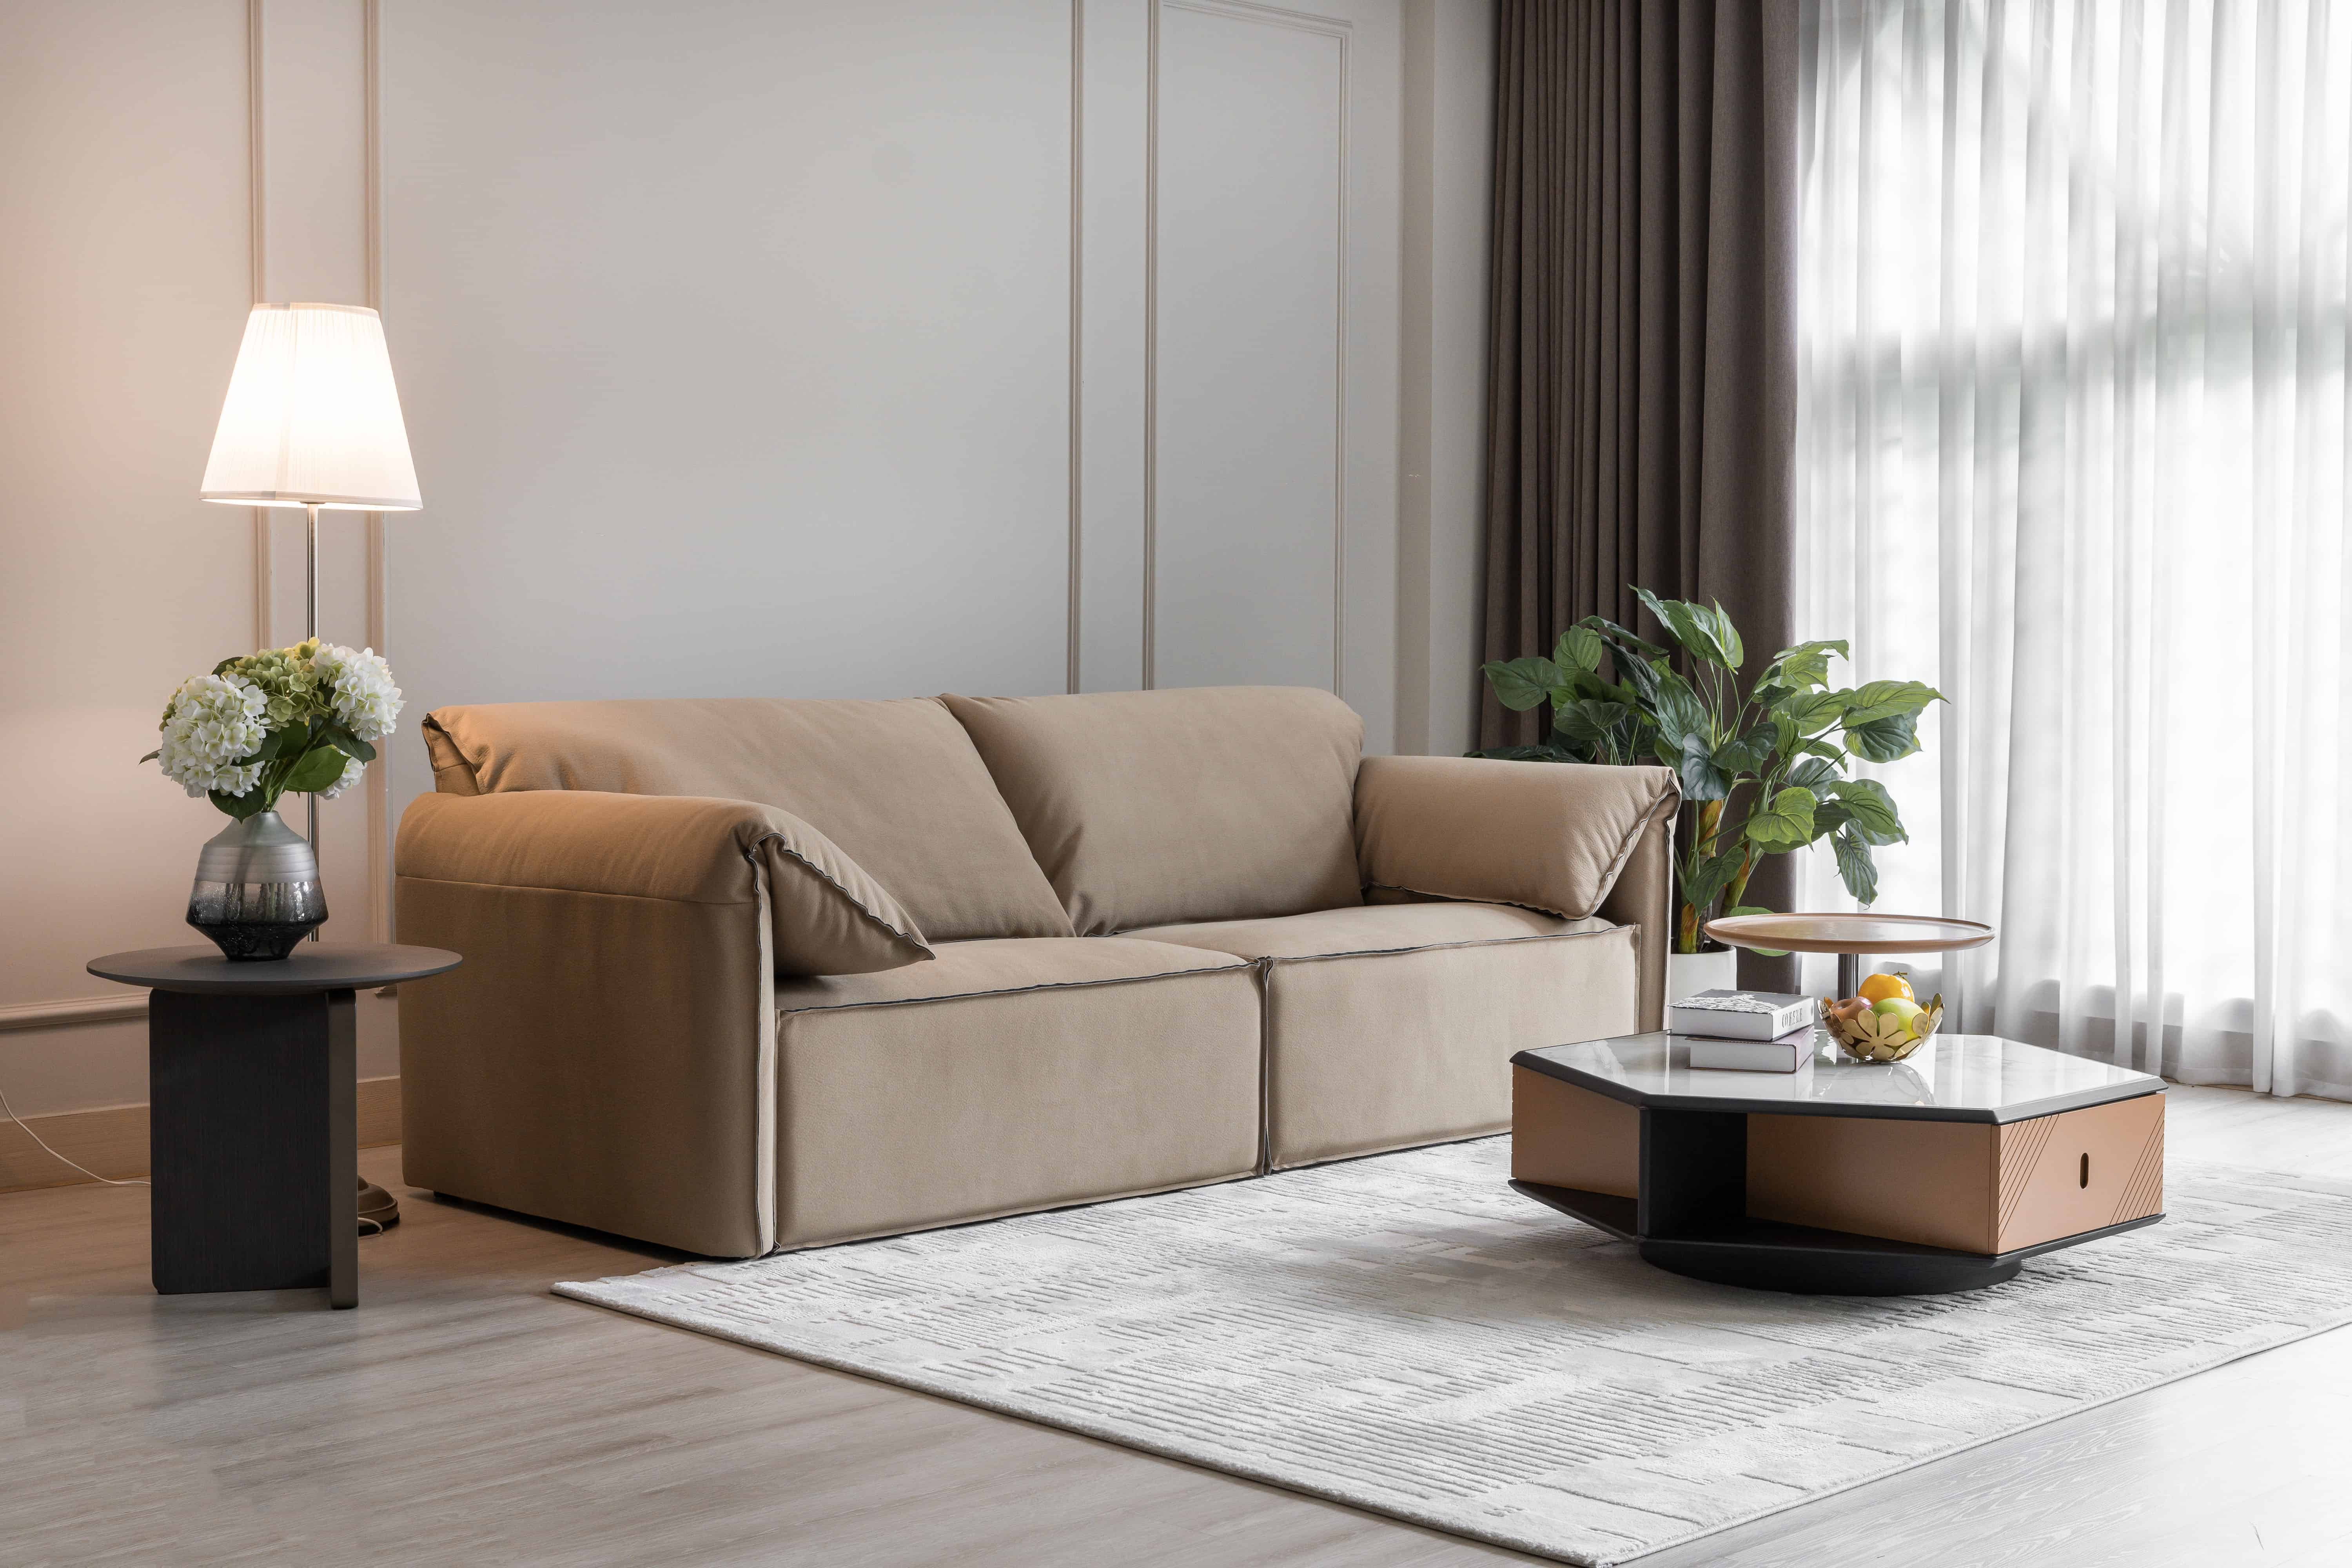 “Vượt thời gian” với Sofa phong cách Ý hiện đại